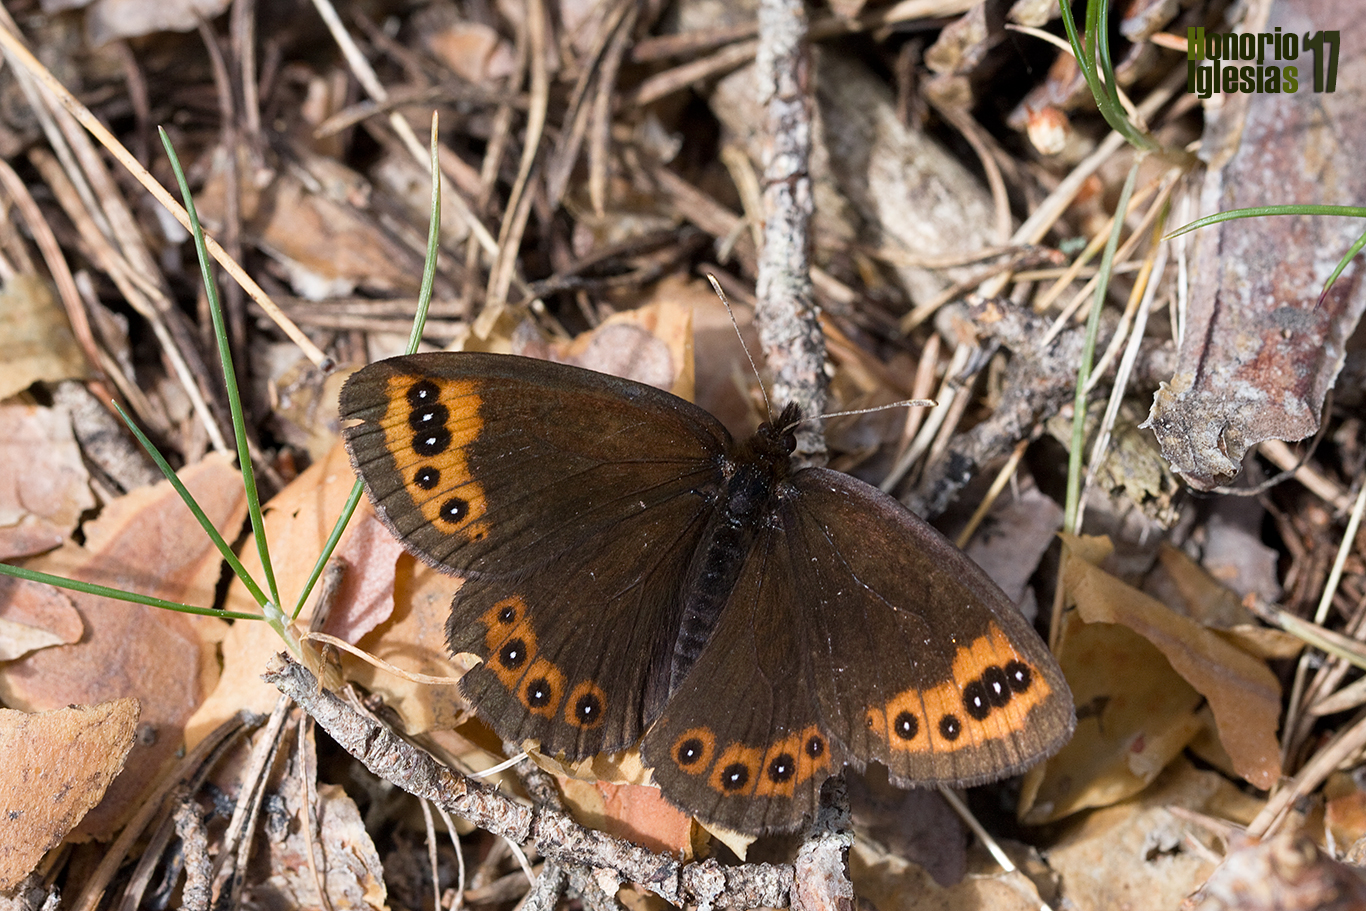 Hembra de mariposa erebia acodada o montañesa vacilante (Erebia triaria) posada sobre el suelo de un robledal serrano con pino silvestre.